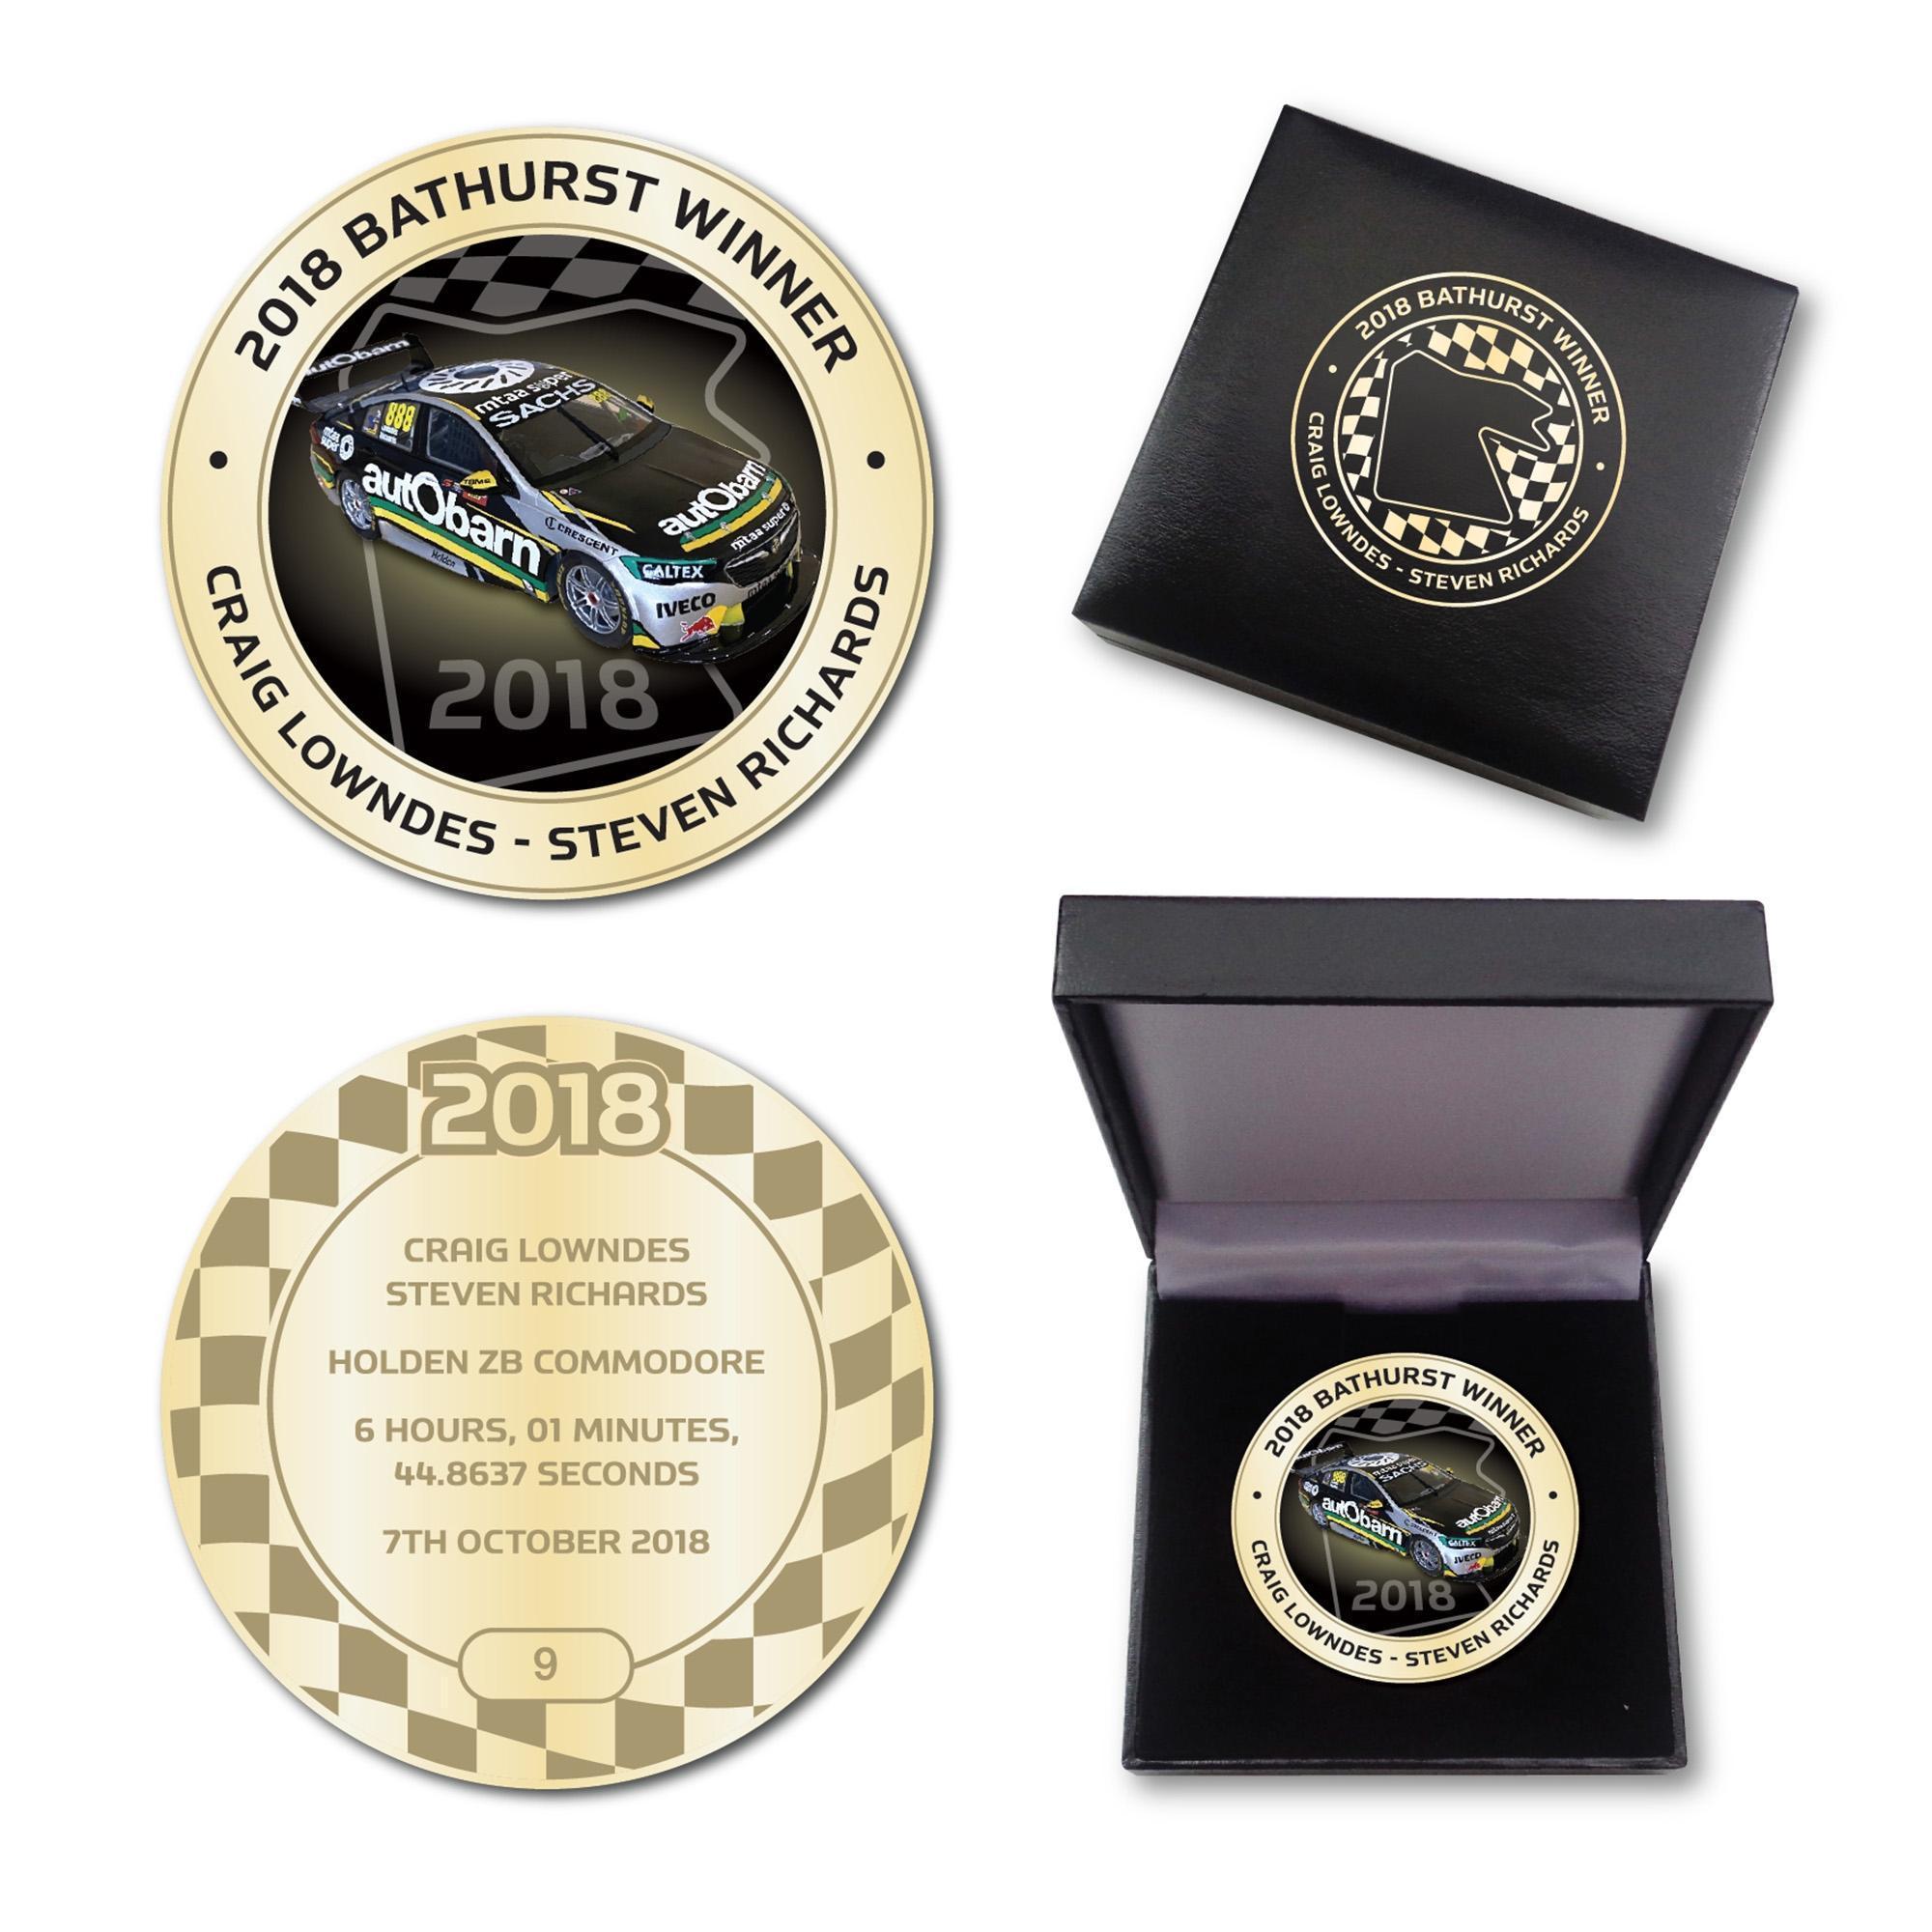 2018 Bathurst Winner Antique Gold Coloured Medallion In Box - Craig Lowndes Steven Richards Holden ZB Commodore